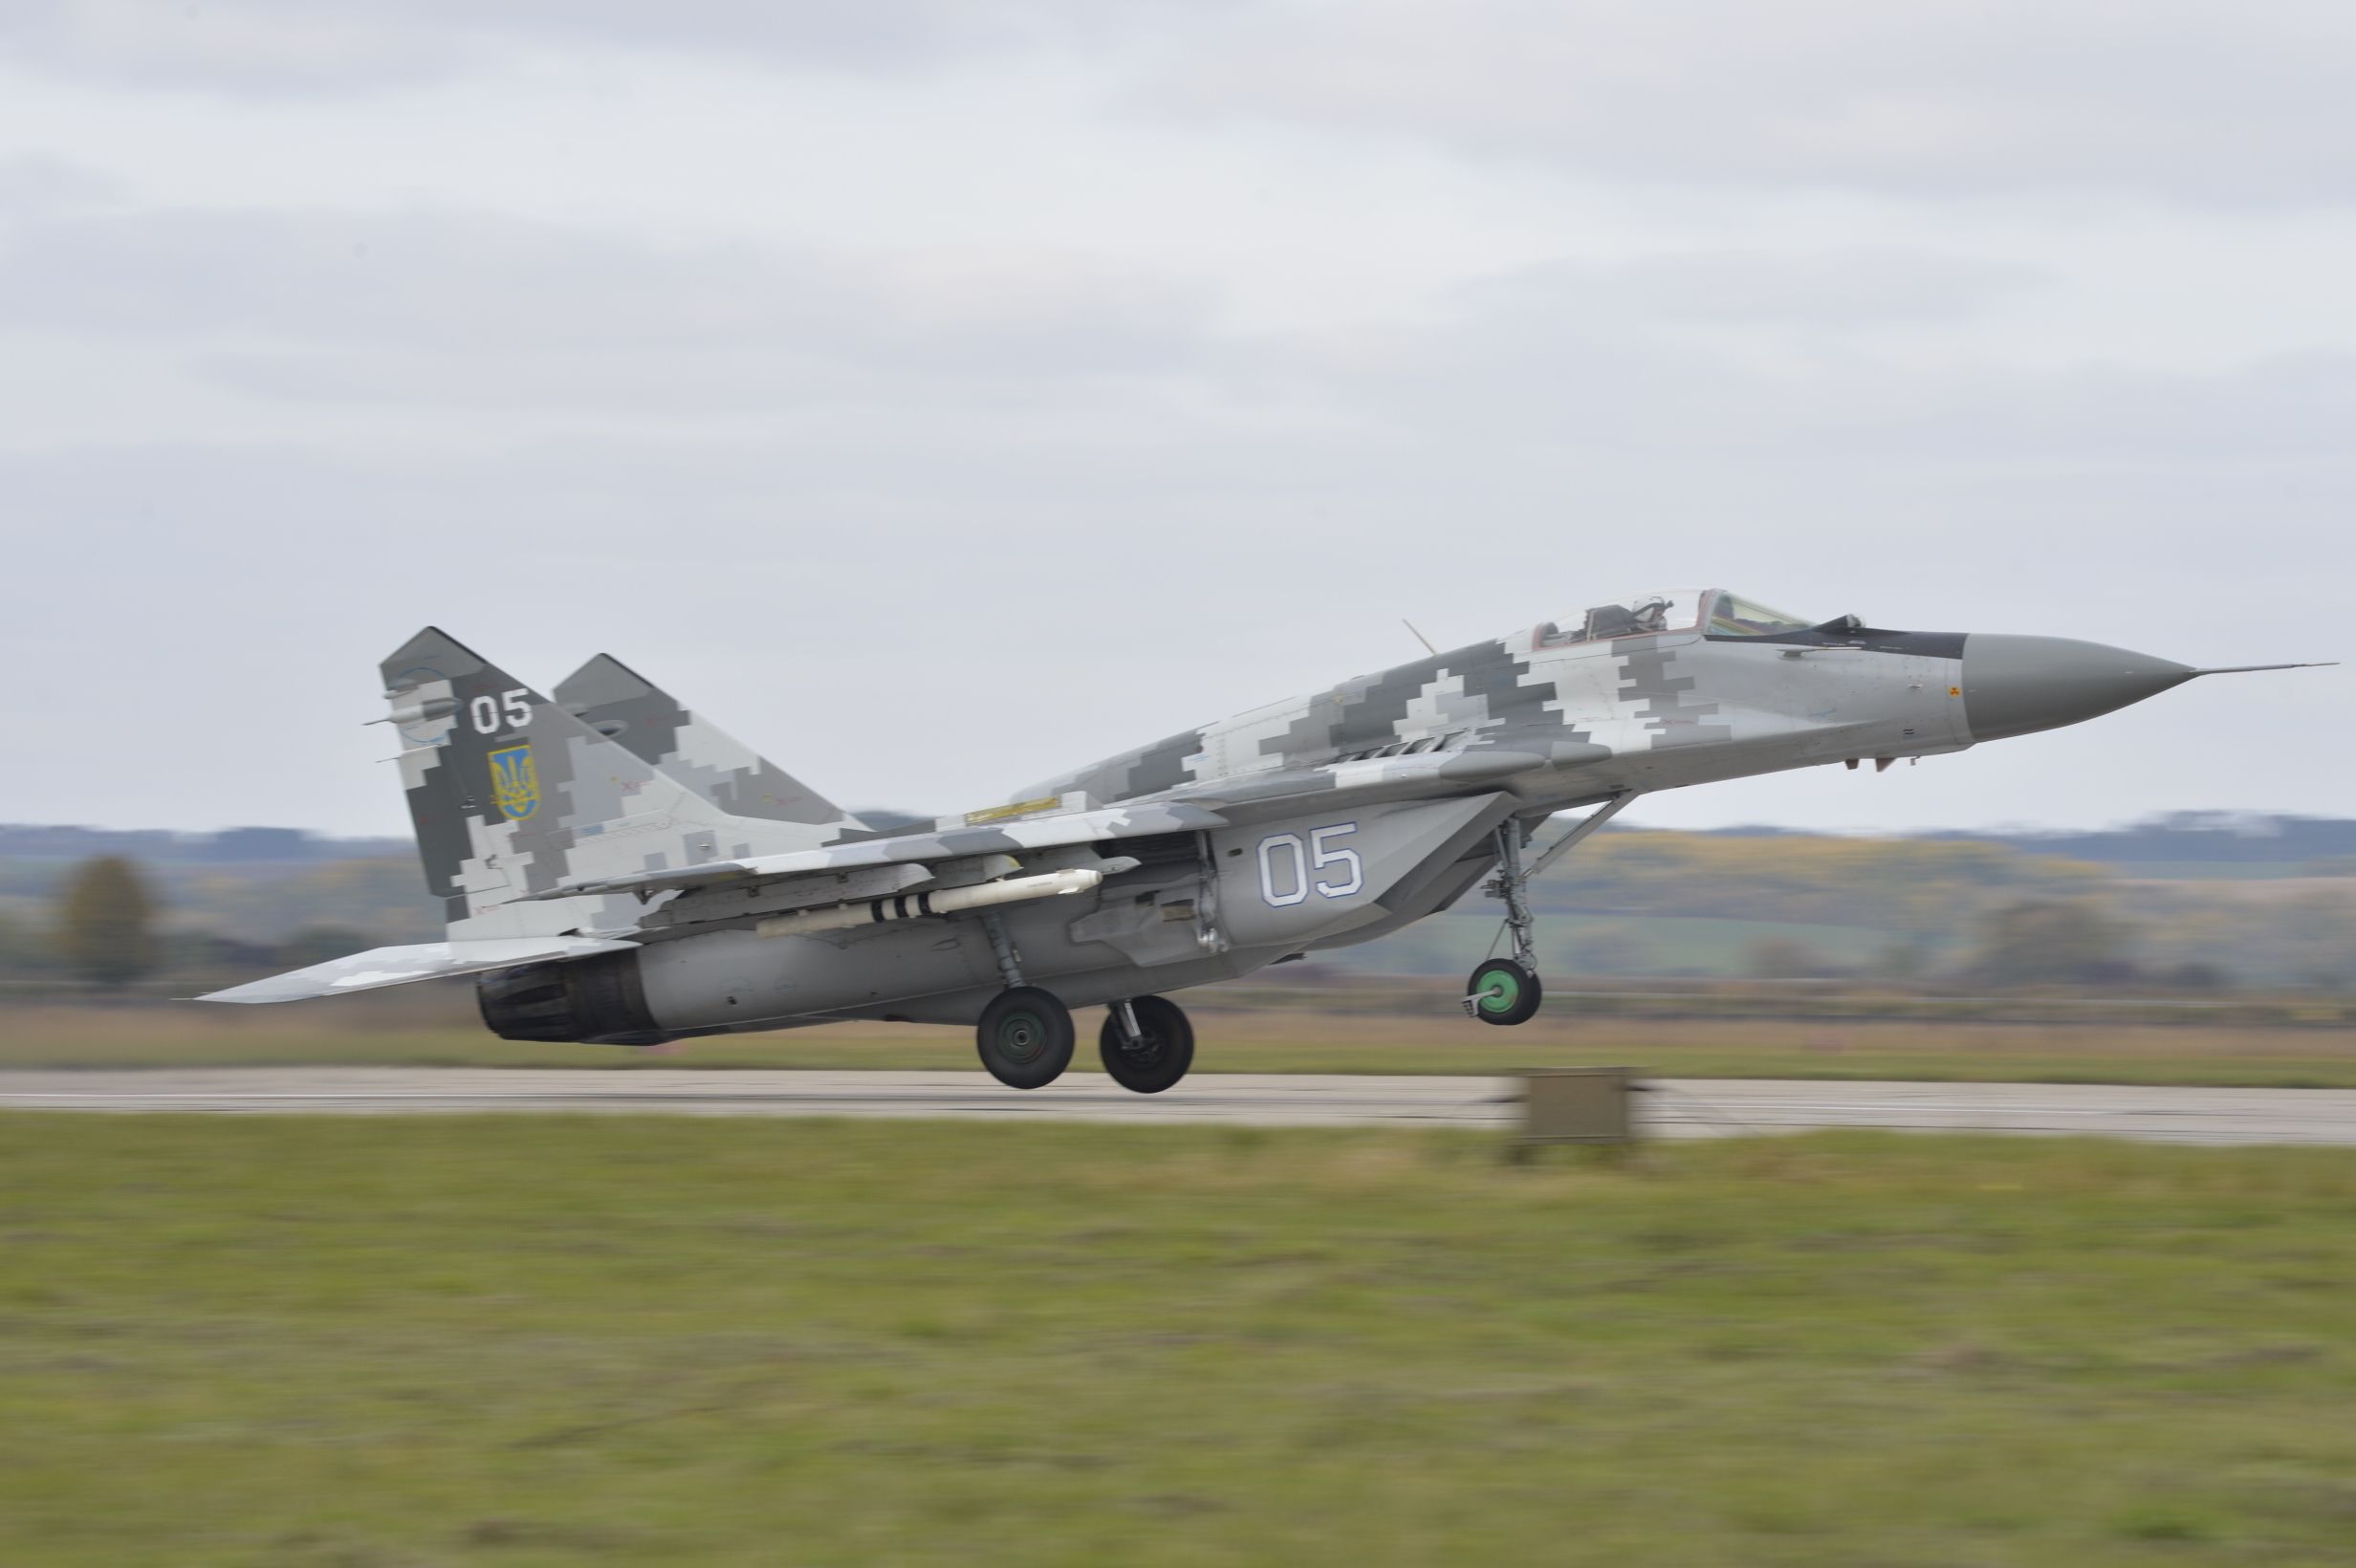 Словакия передаст Украине 13 МиГ-29 - что известно о помощи - 24 Канал